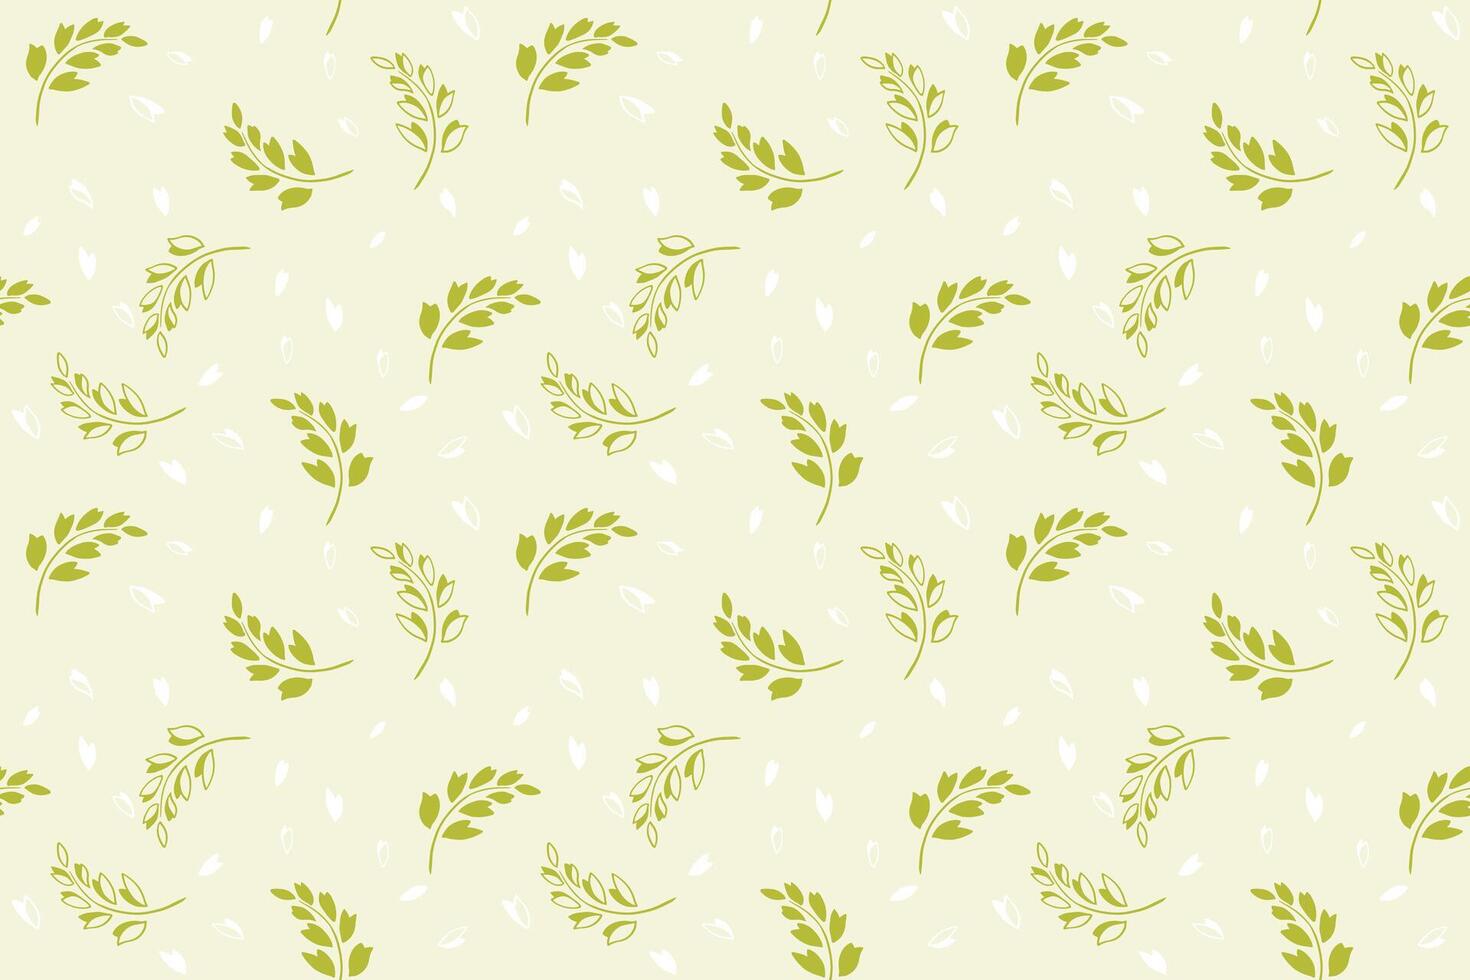 sömlös mönster med kreativ små silhuetter grenar löv och mycket liten former, droppar, fläckar. enkel stiliserade grön blommig utskrift på en ljus bakgrund. vektor hand ritade. design för utskrift